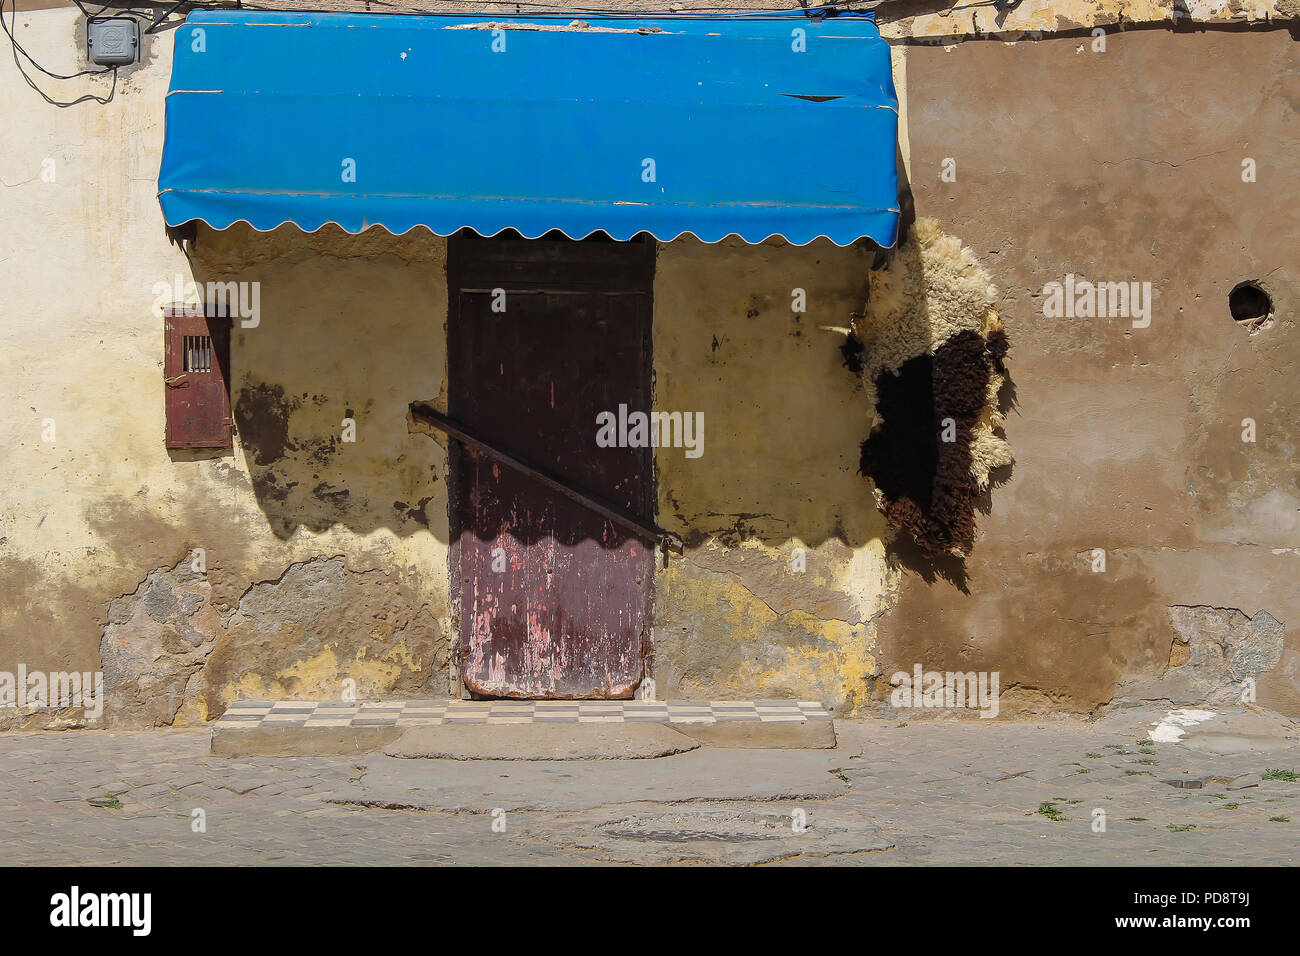 Vue d'une rue sur une porte fermée d'une boutique dans une maison ancienne. Marquise de l'ombre bleue pour certains. La peau de mouton accroché près de la porte. El Jadida, Maroc. Banque D'Images